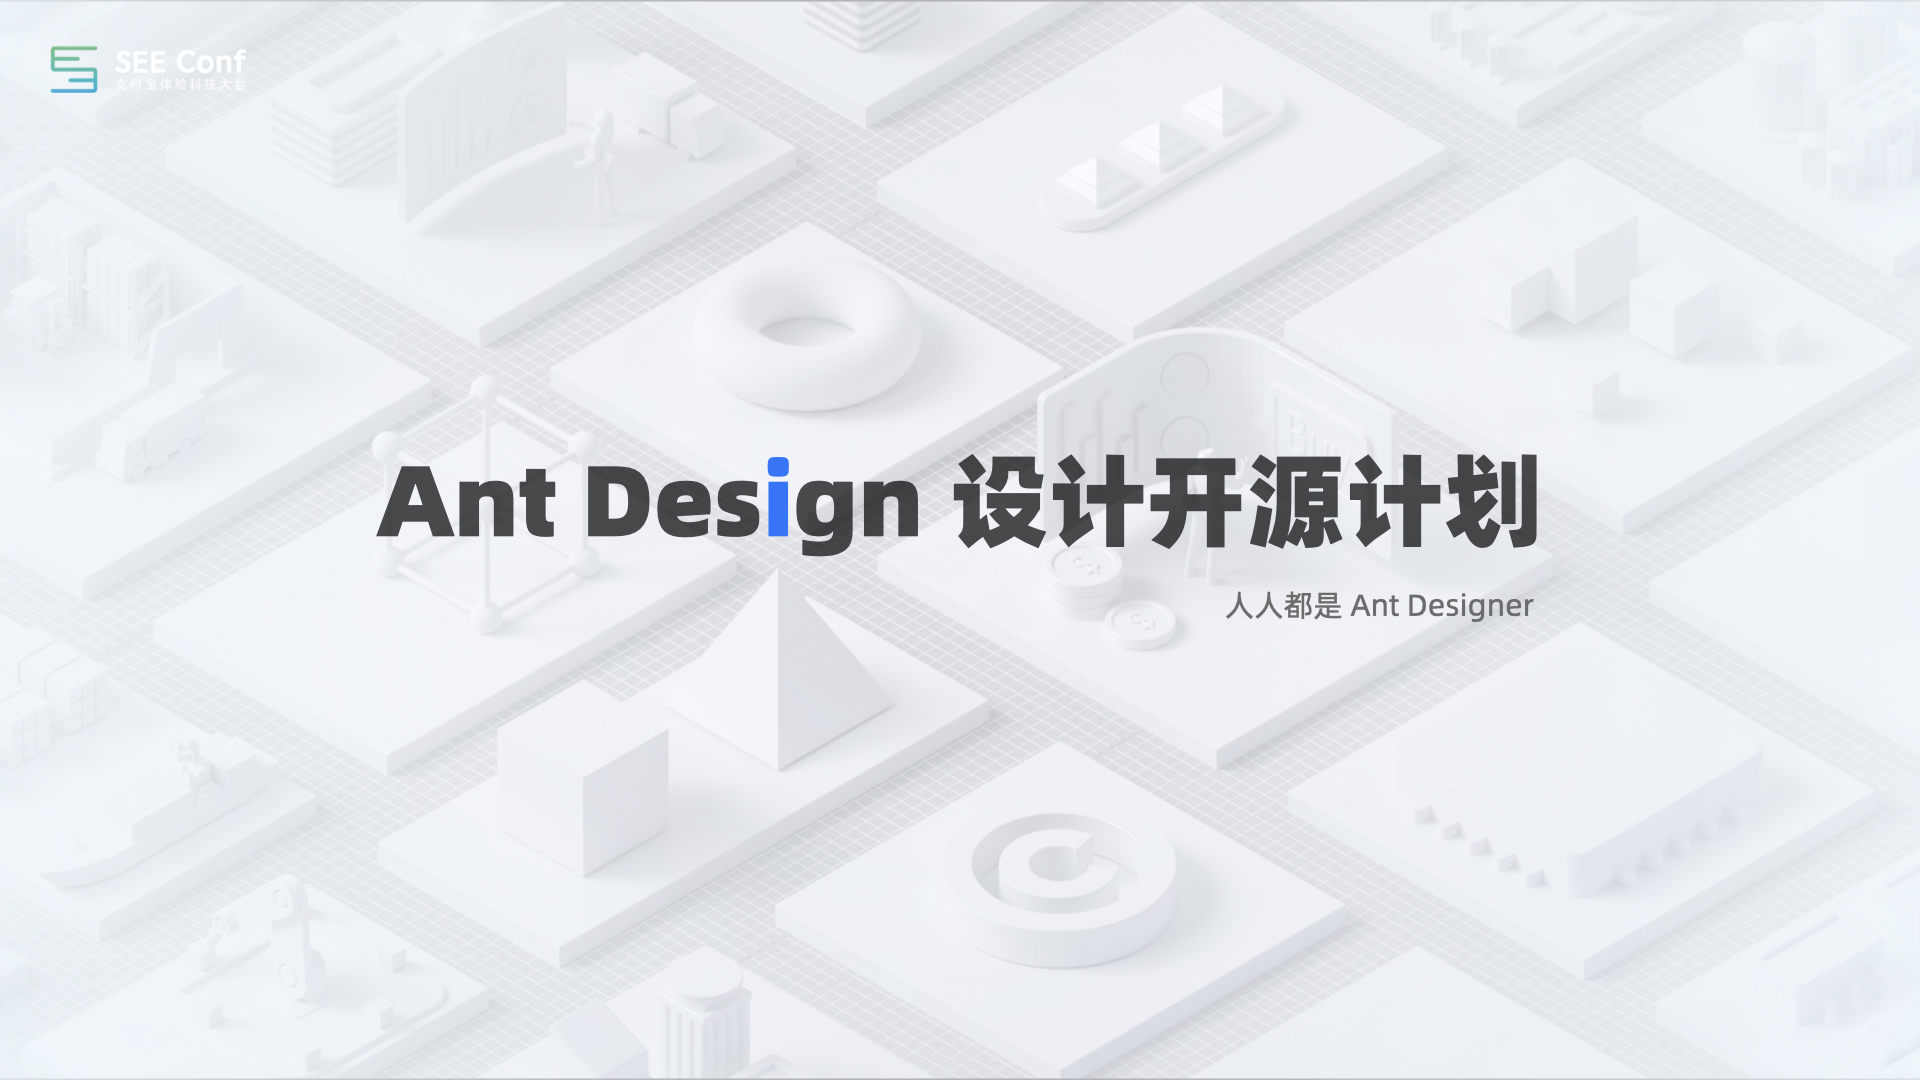 Ant Design 设计工程化0109正式版.085.jpeg